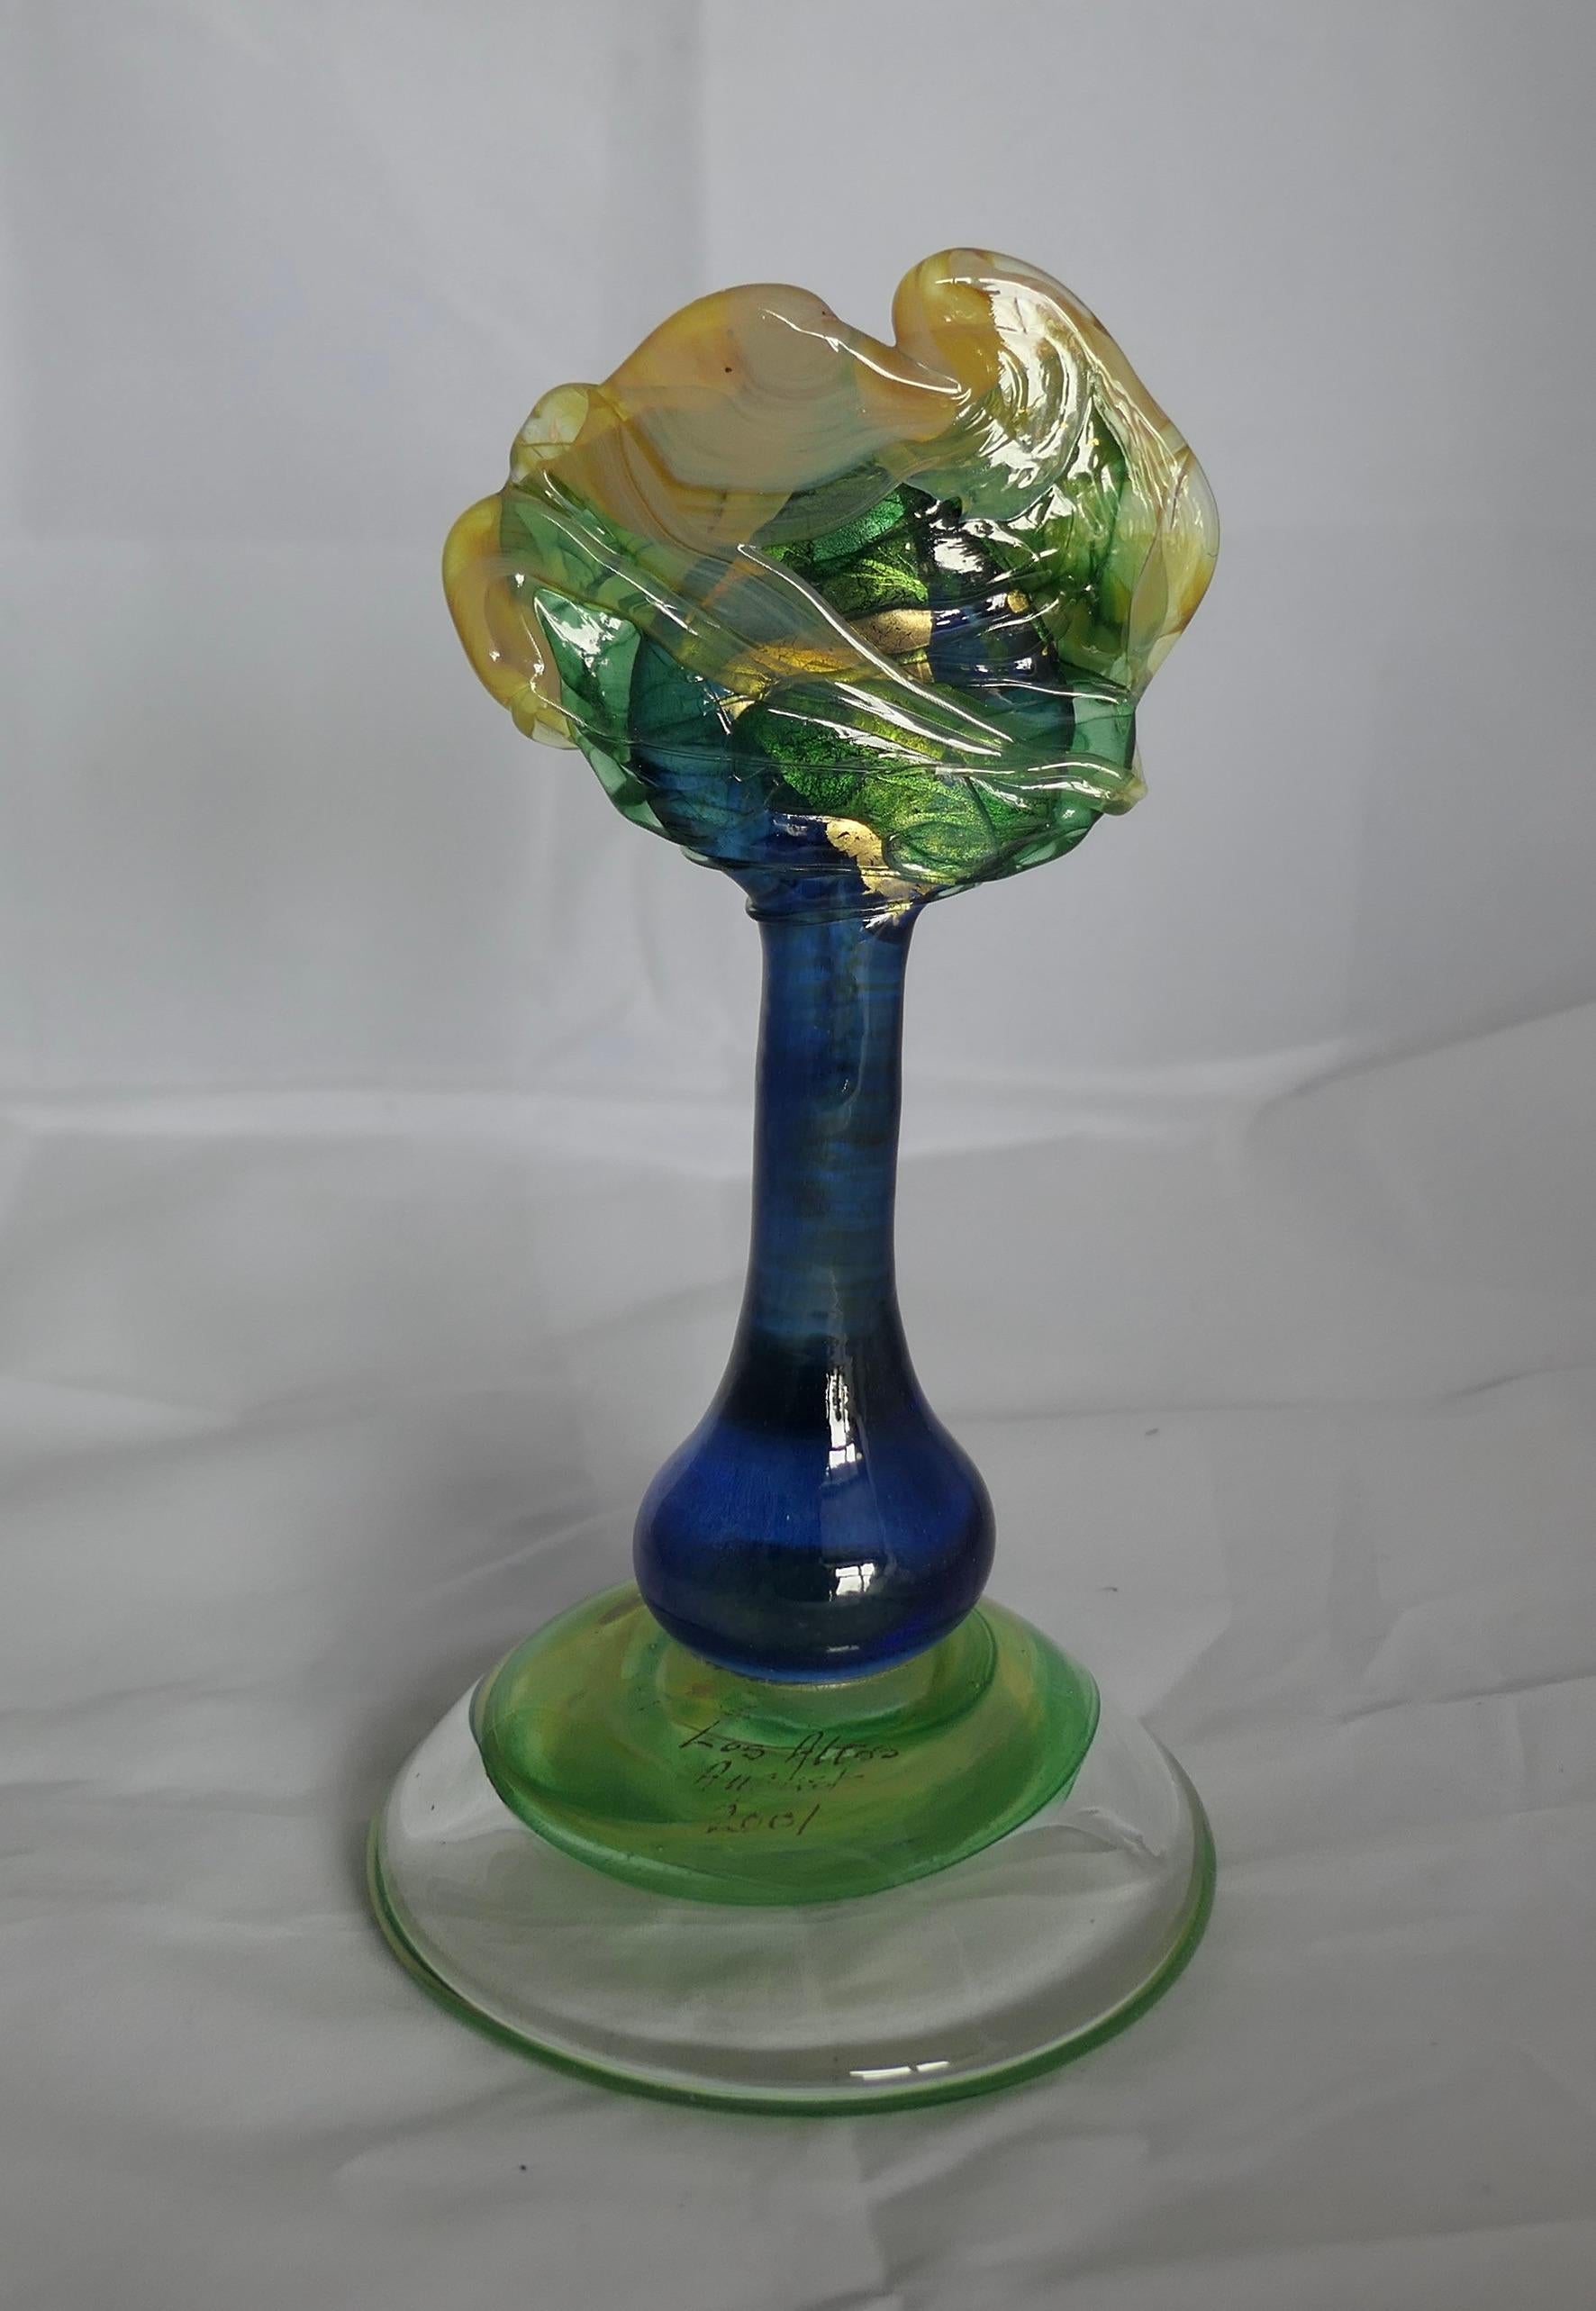 Isle of Wight Studio-Glasbaum, signiert Martin Evans

Hervorragendes Stück im Arts and Crafts Stil Signiert Martin Evans 2001, der Baum ist in neon blau mit Grün und Gold
Auf der Oberseite des Sockels ist der Titel 